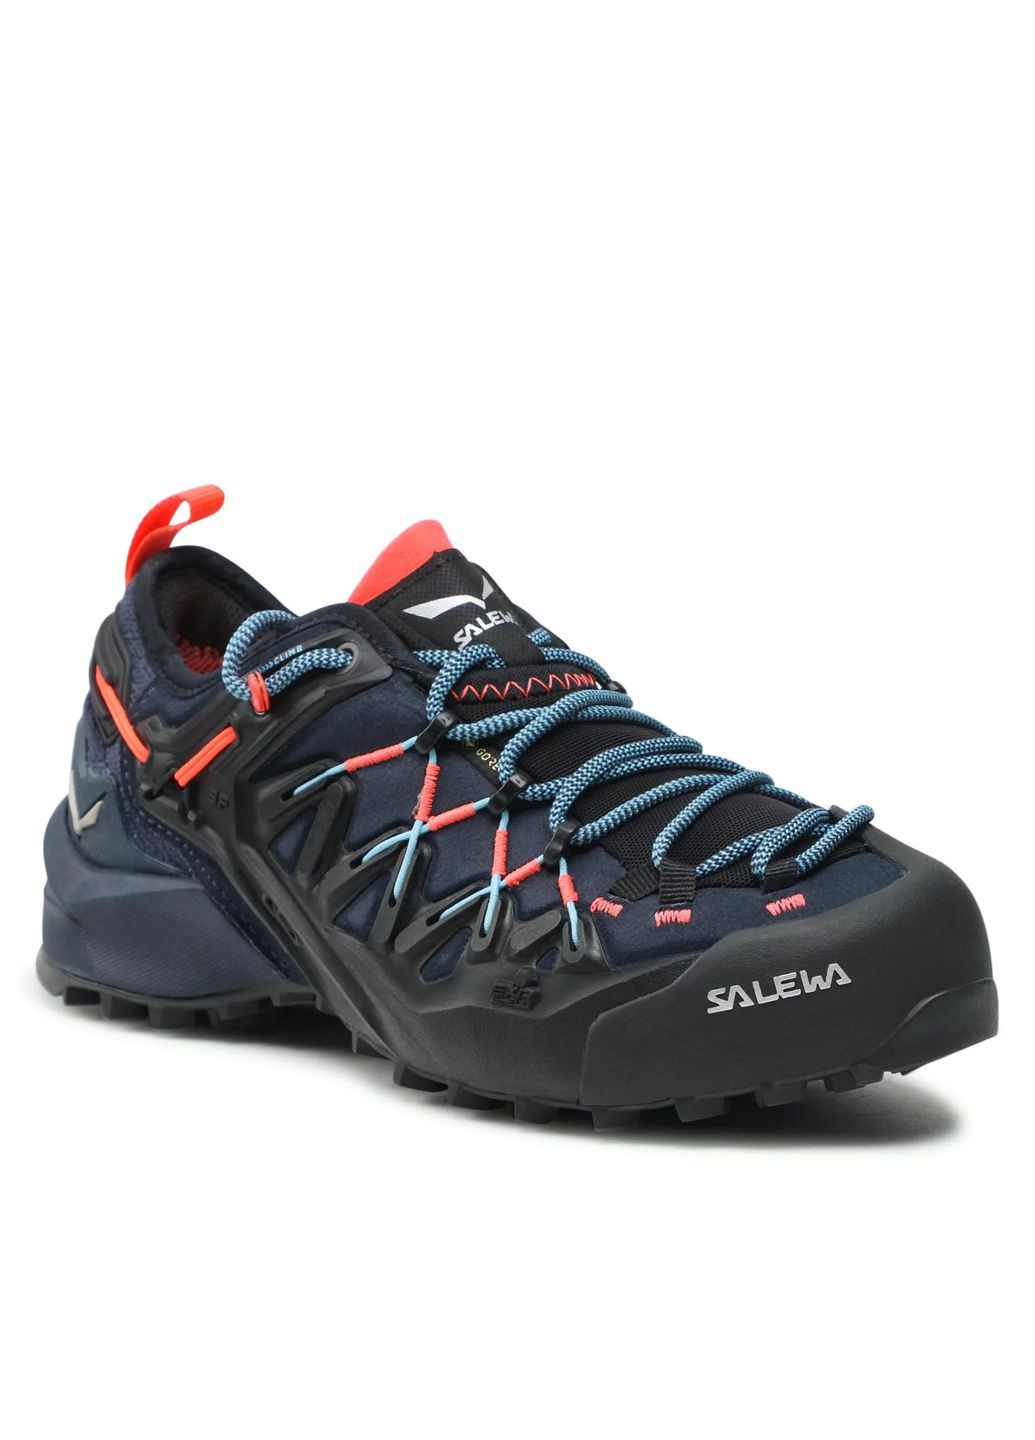 Комбіновані осінні кросівки wildfire edge gtx wms синій-чорний Salewa